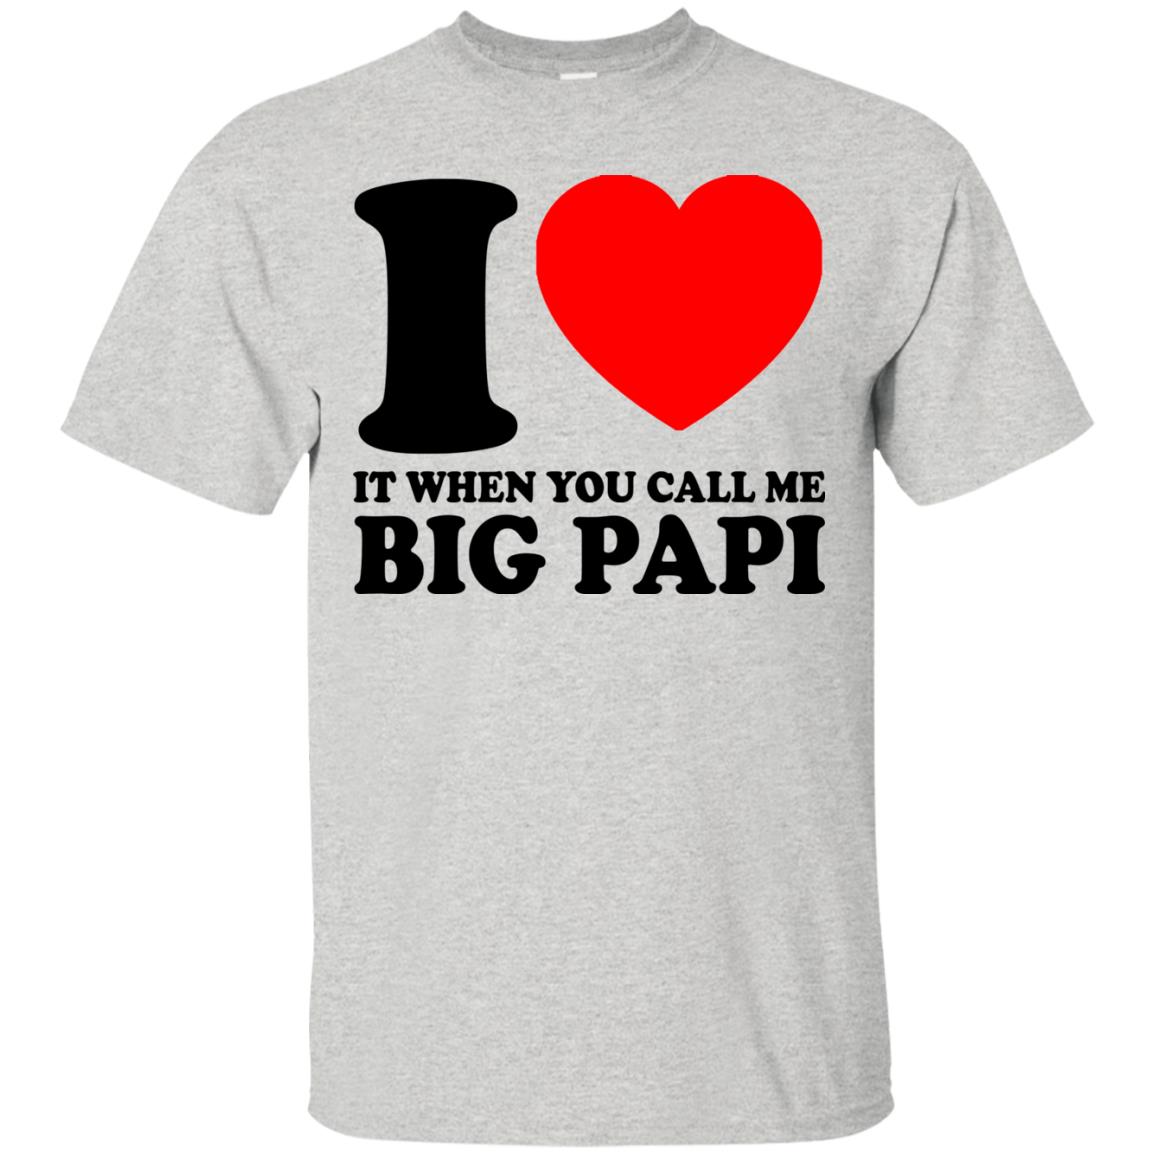 big papi shirt